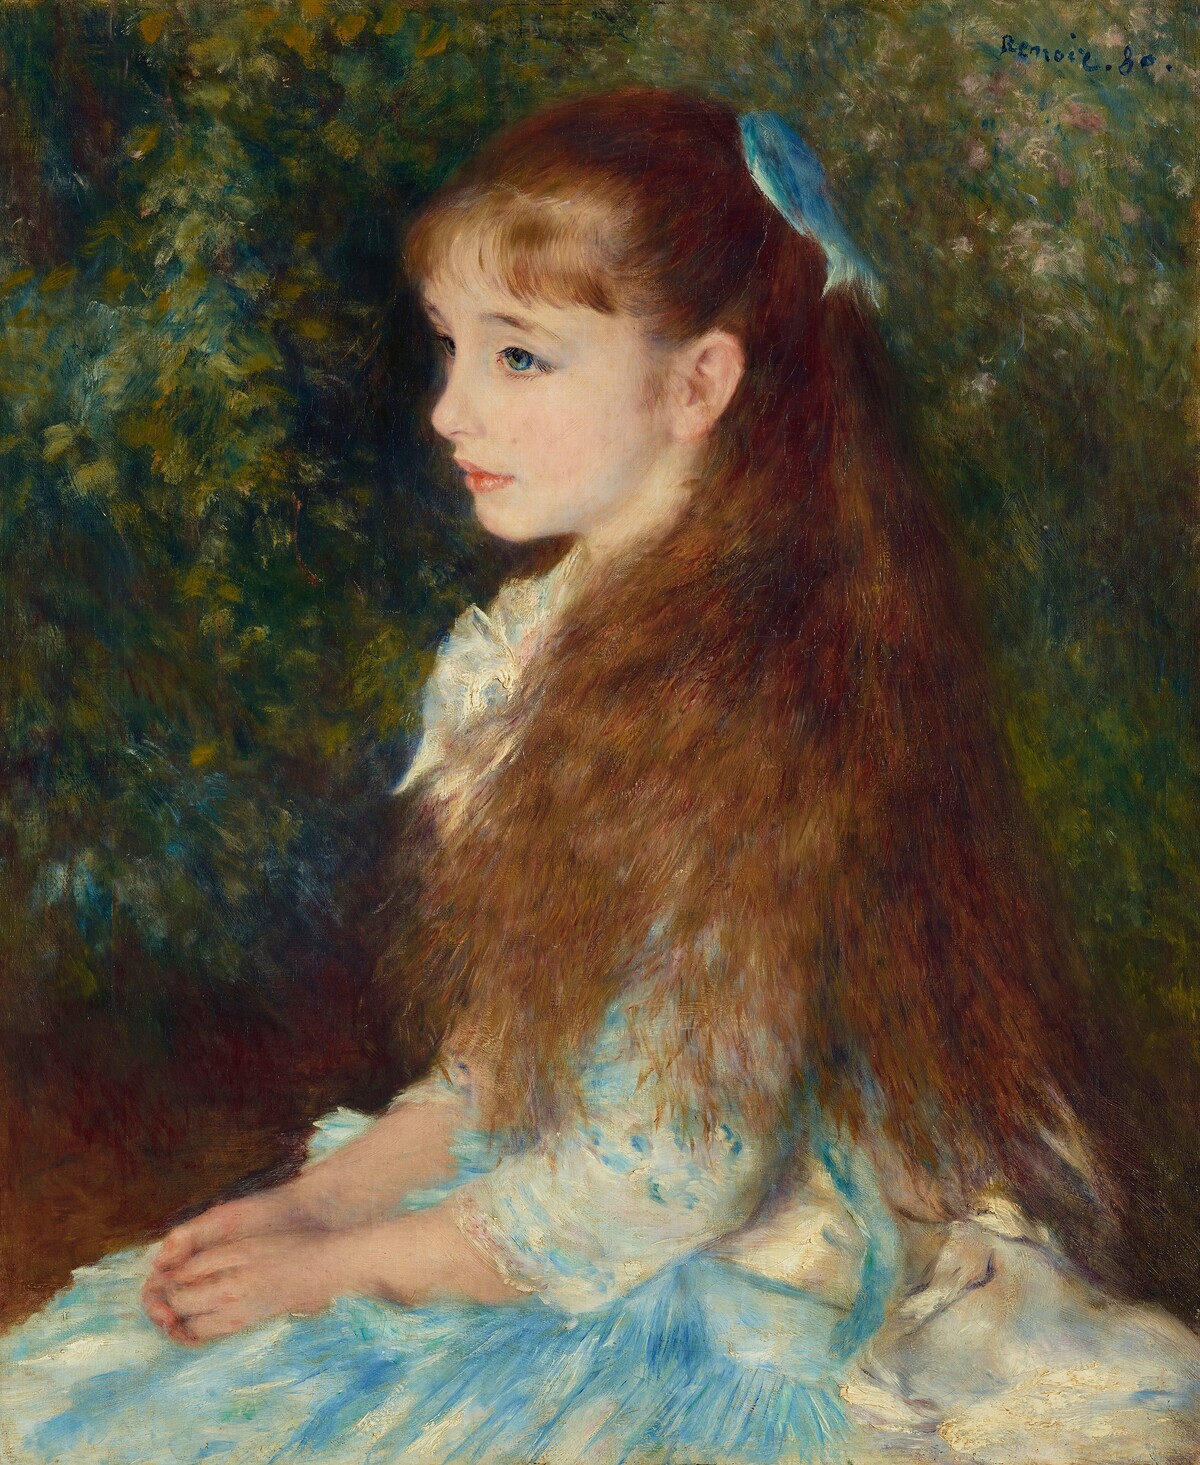 Renoir: Irène Cahen d’Anvers